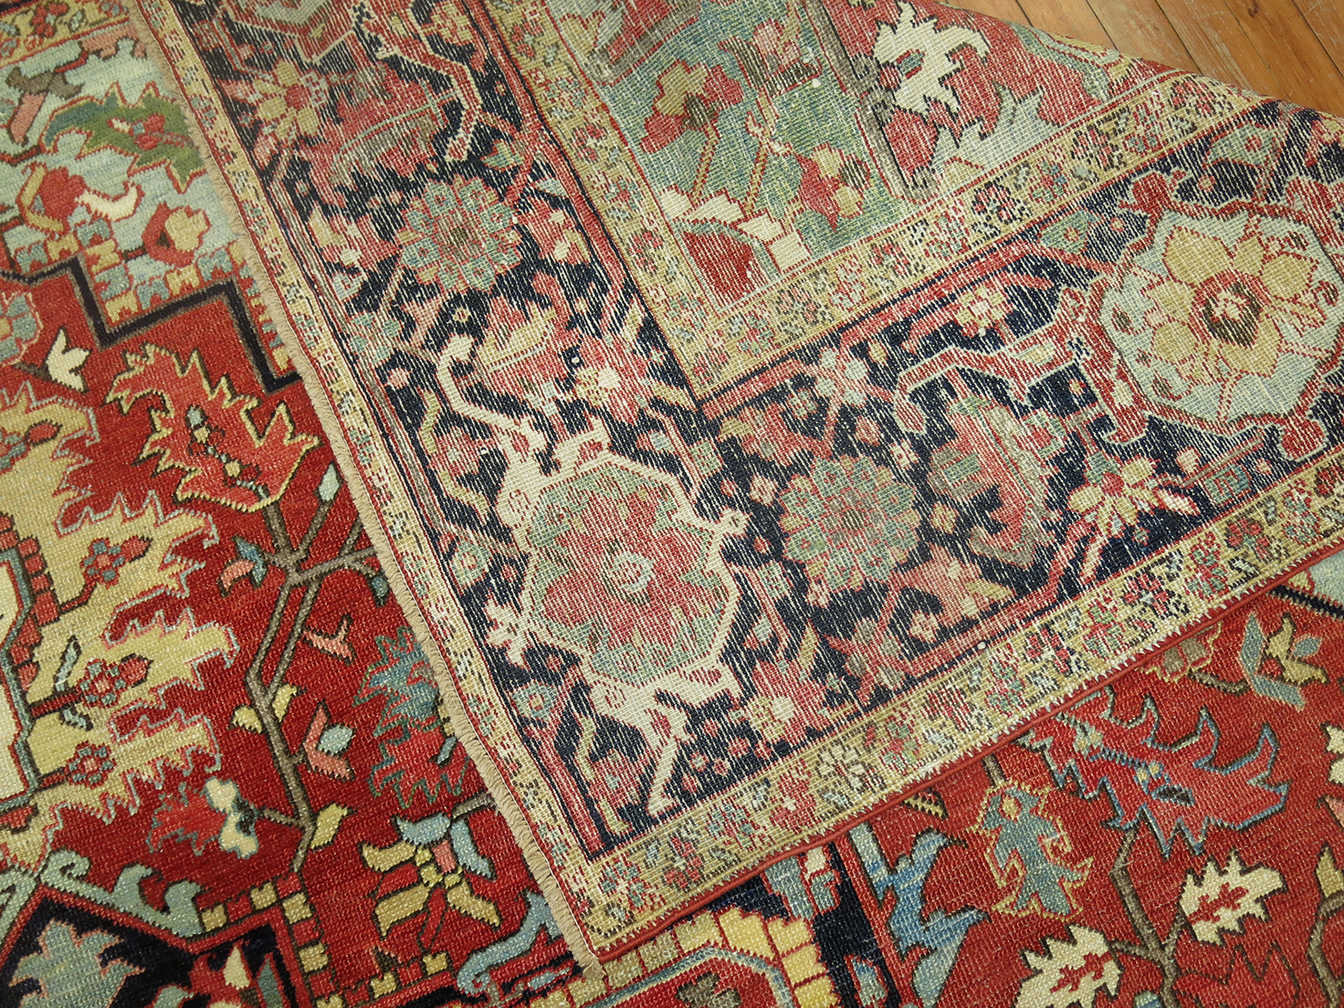 Antique heriz Carpet - # 55704